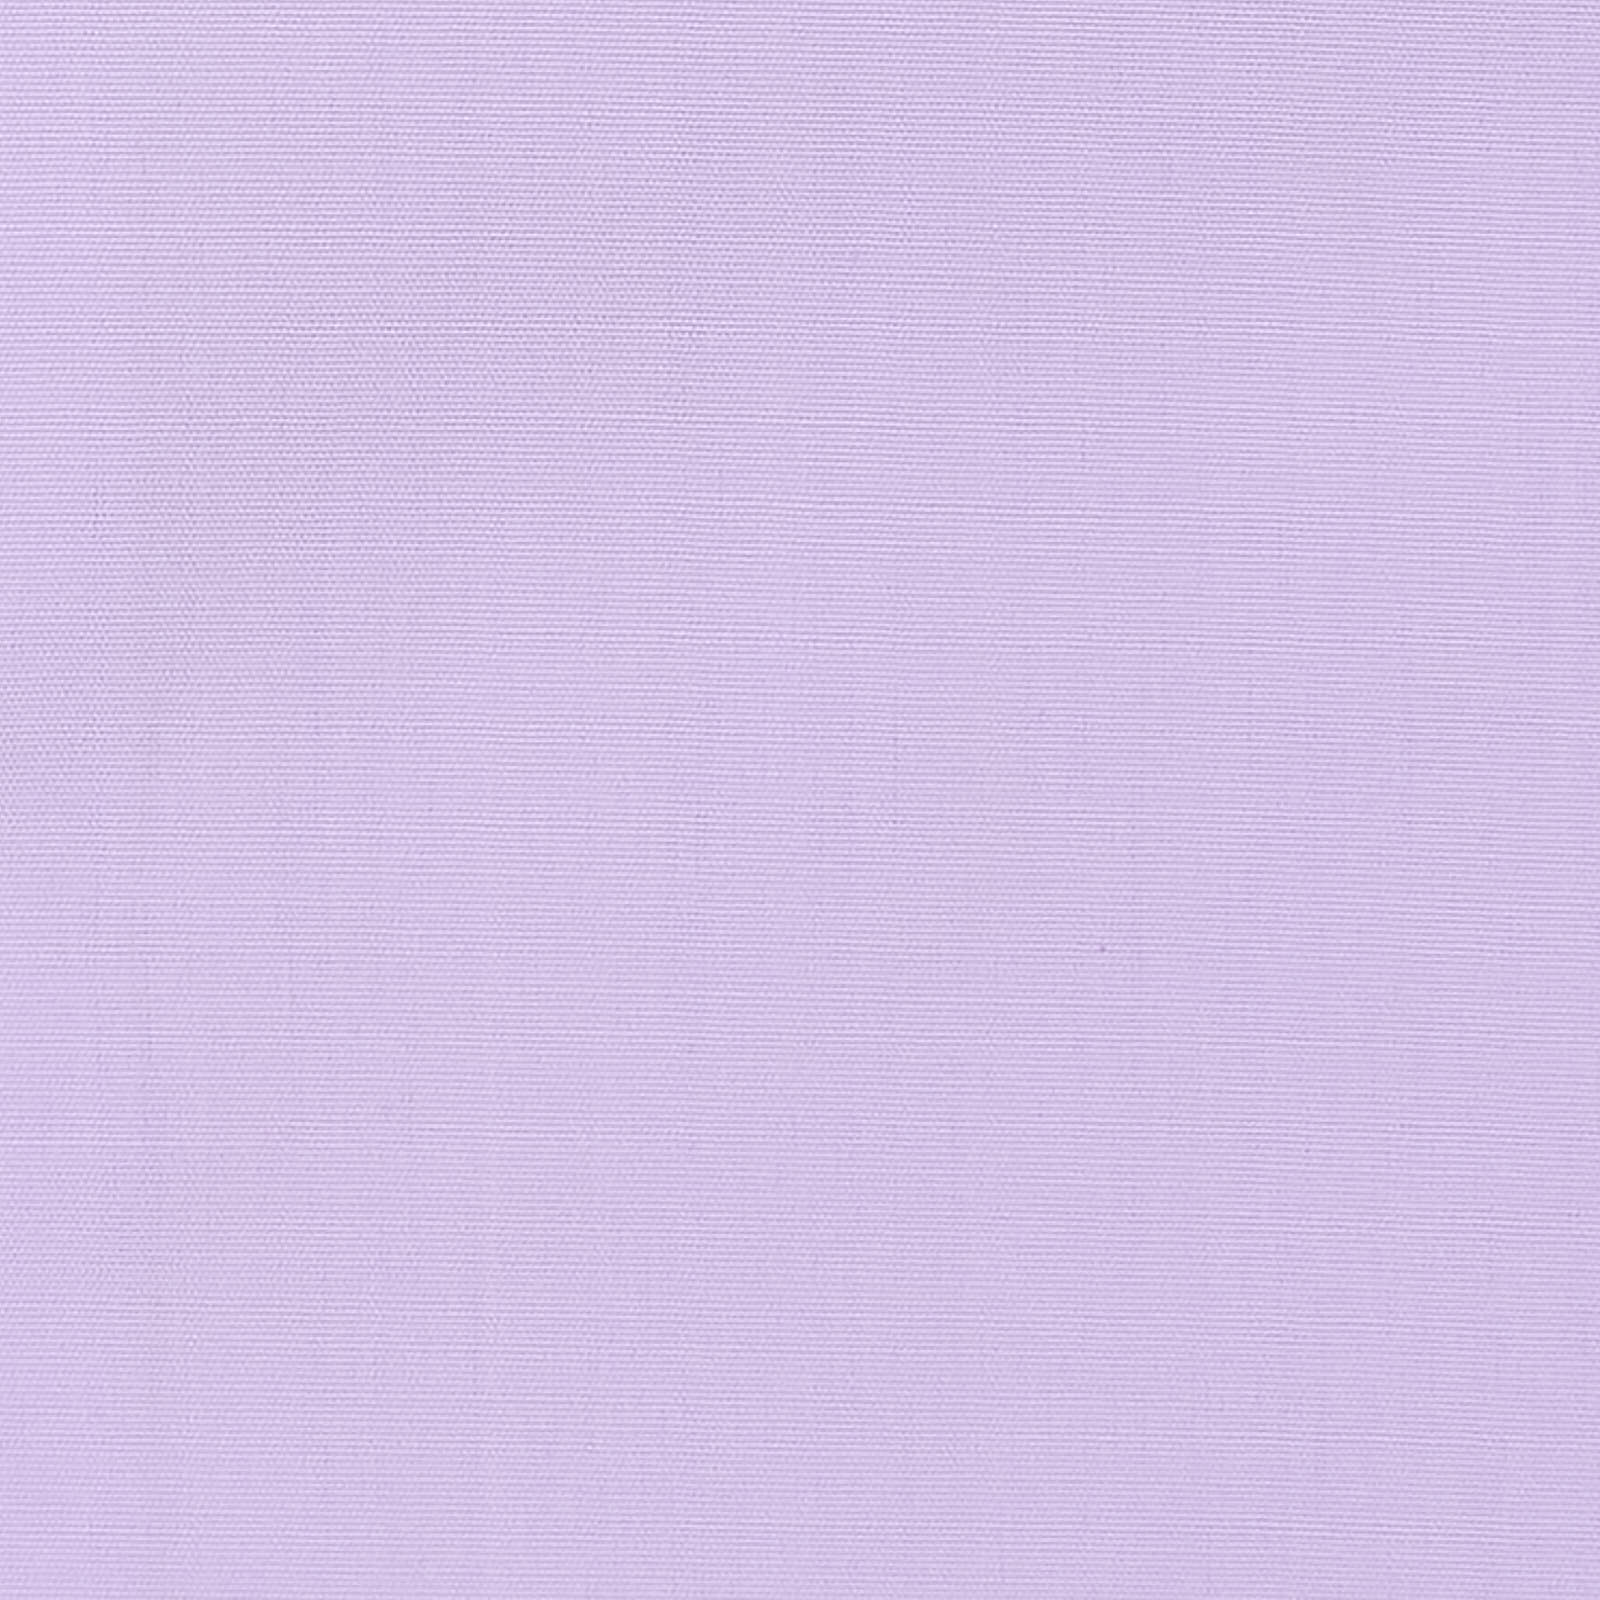 BESPOKE ATHENS Handmade Light Purple Cotton French Cuff Dress Shirt EU 38 NEW US 15